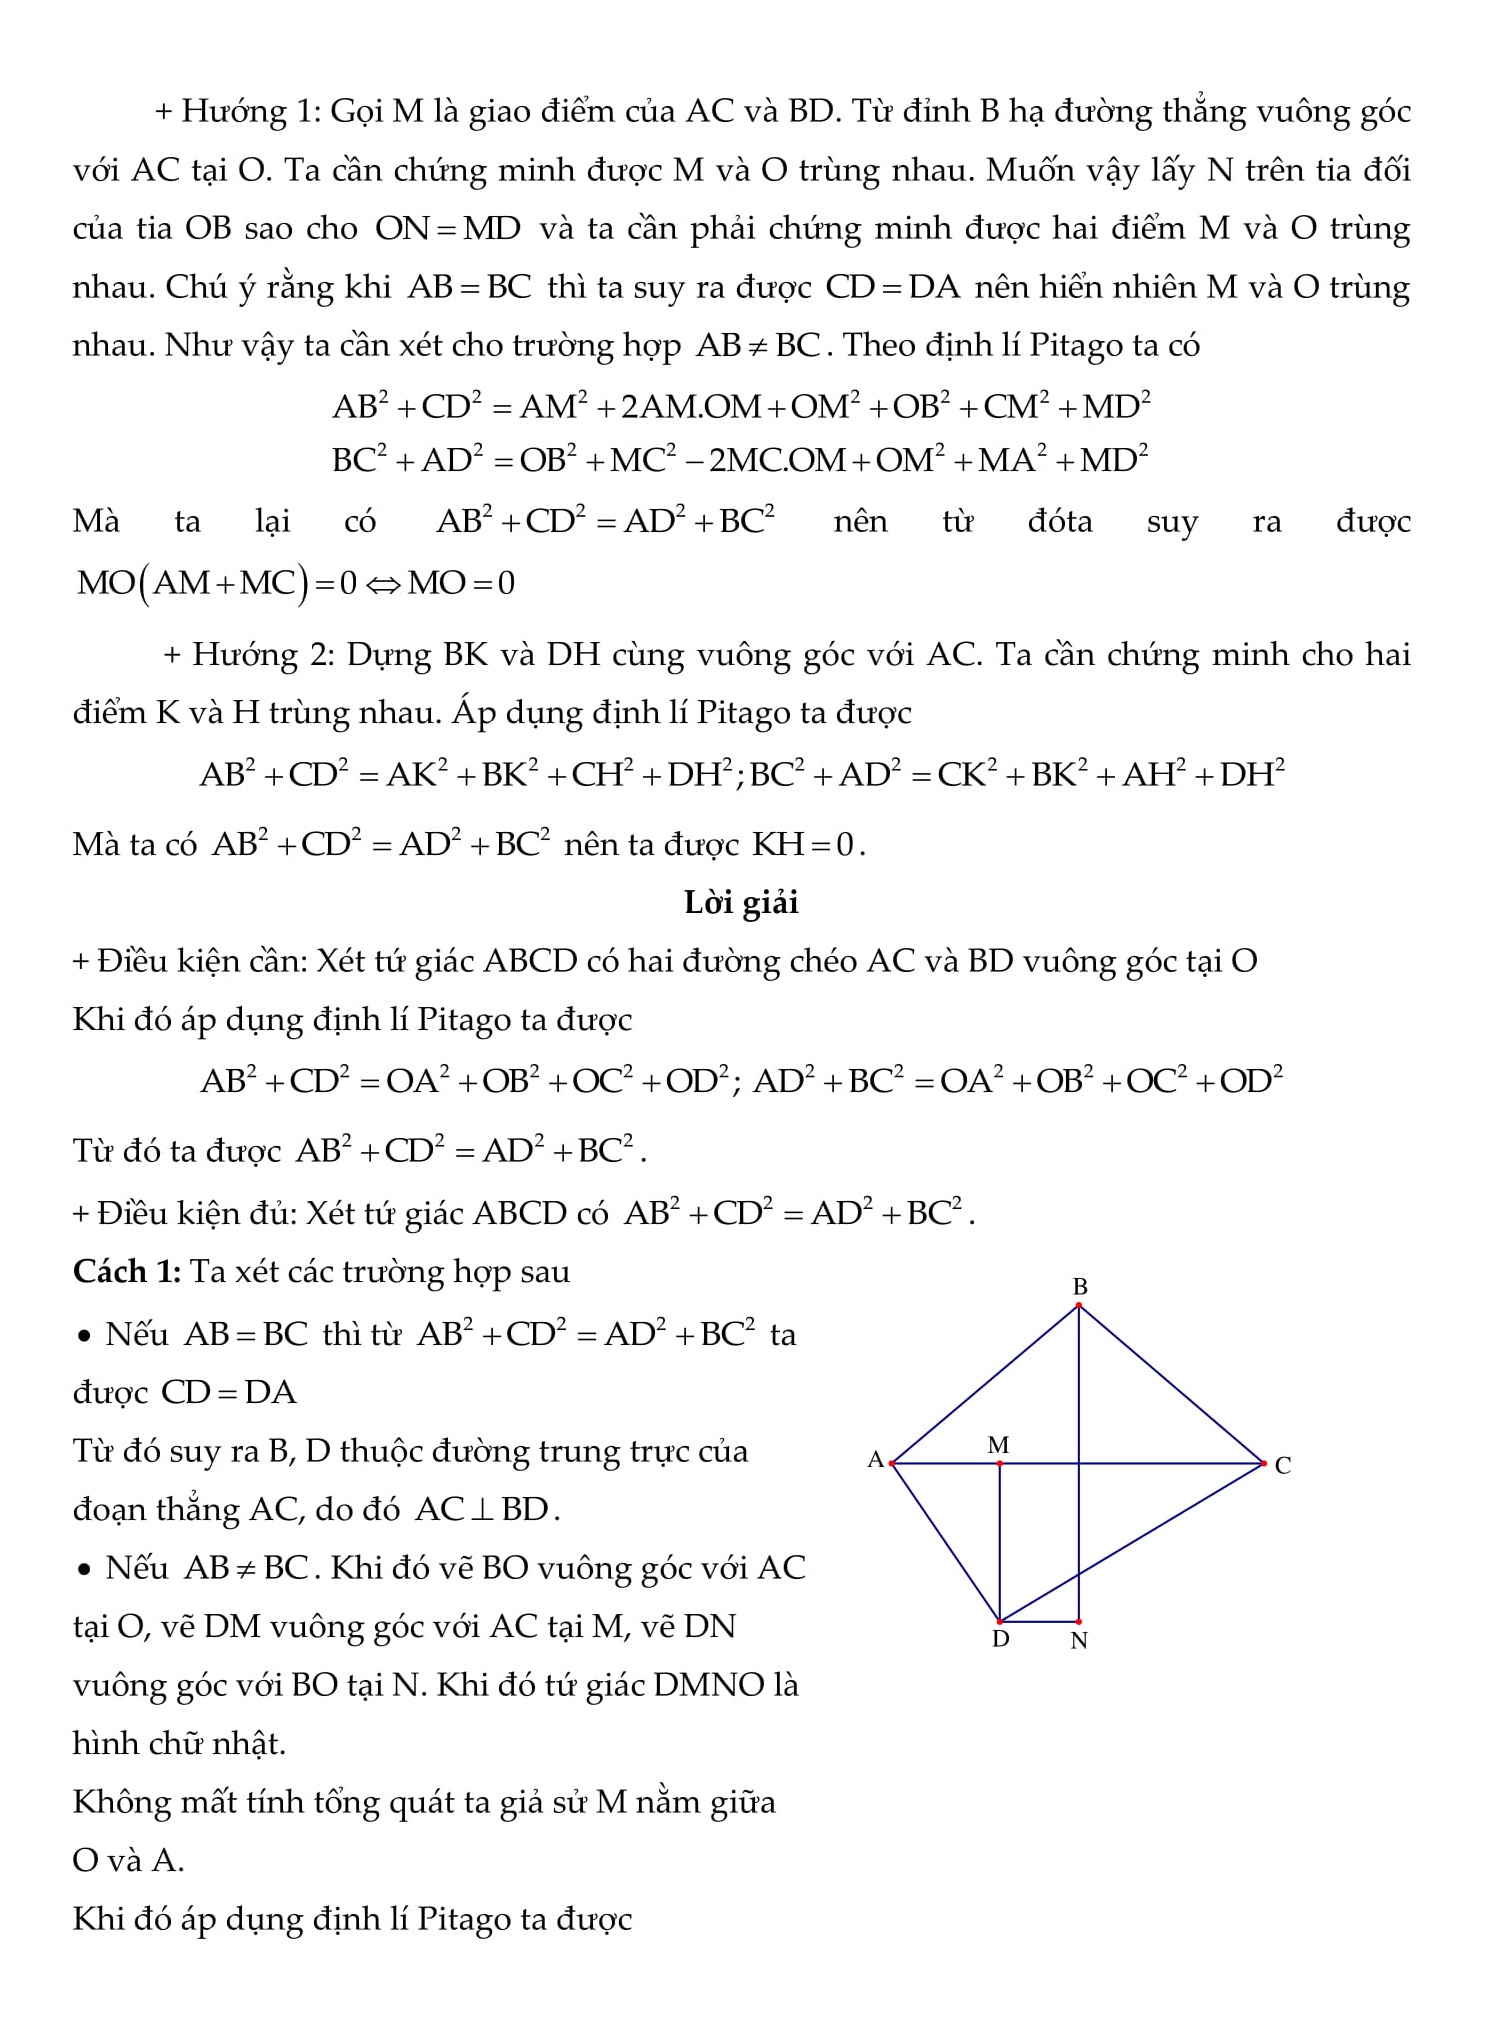 Tổng hợp các bài tập về tứ giác và đa giác - Toán hình 8